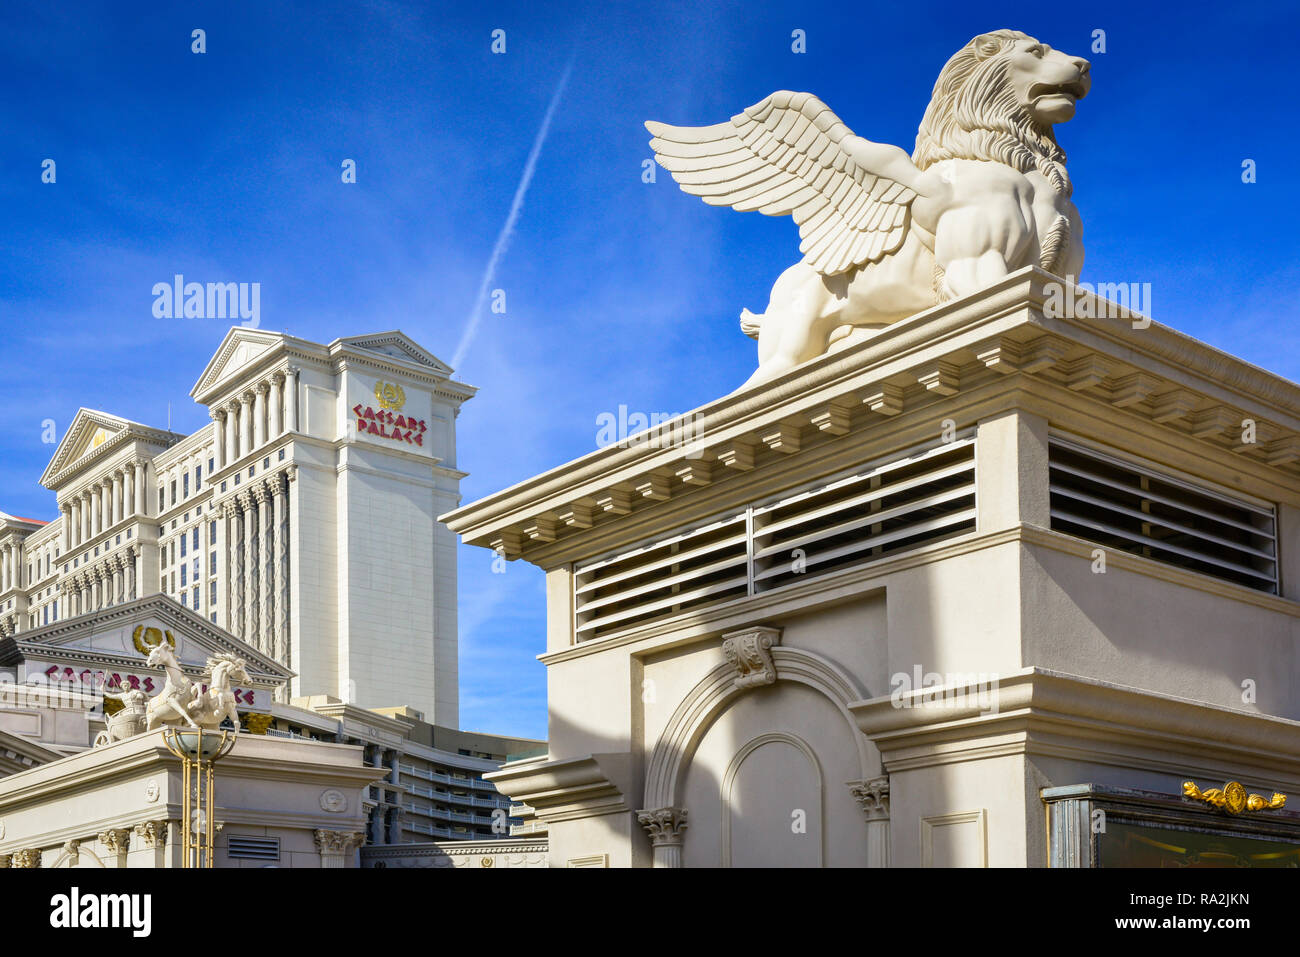 Lion ailé et chairot statuaire de course à l'entrée de l'hôtel et casino à thème Romain, Caesars Palace à Las Vegas, NV contre le ciel bleu Banque D'Images